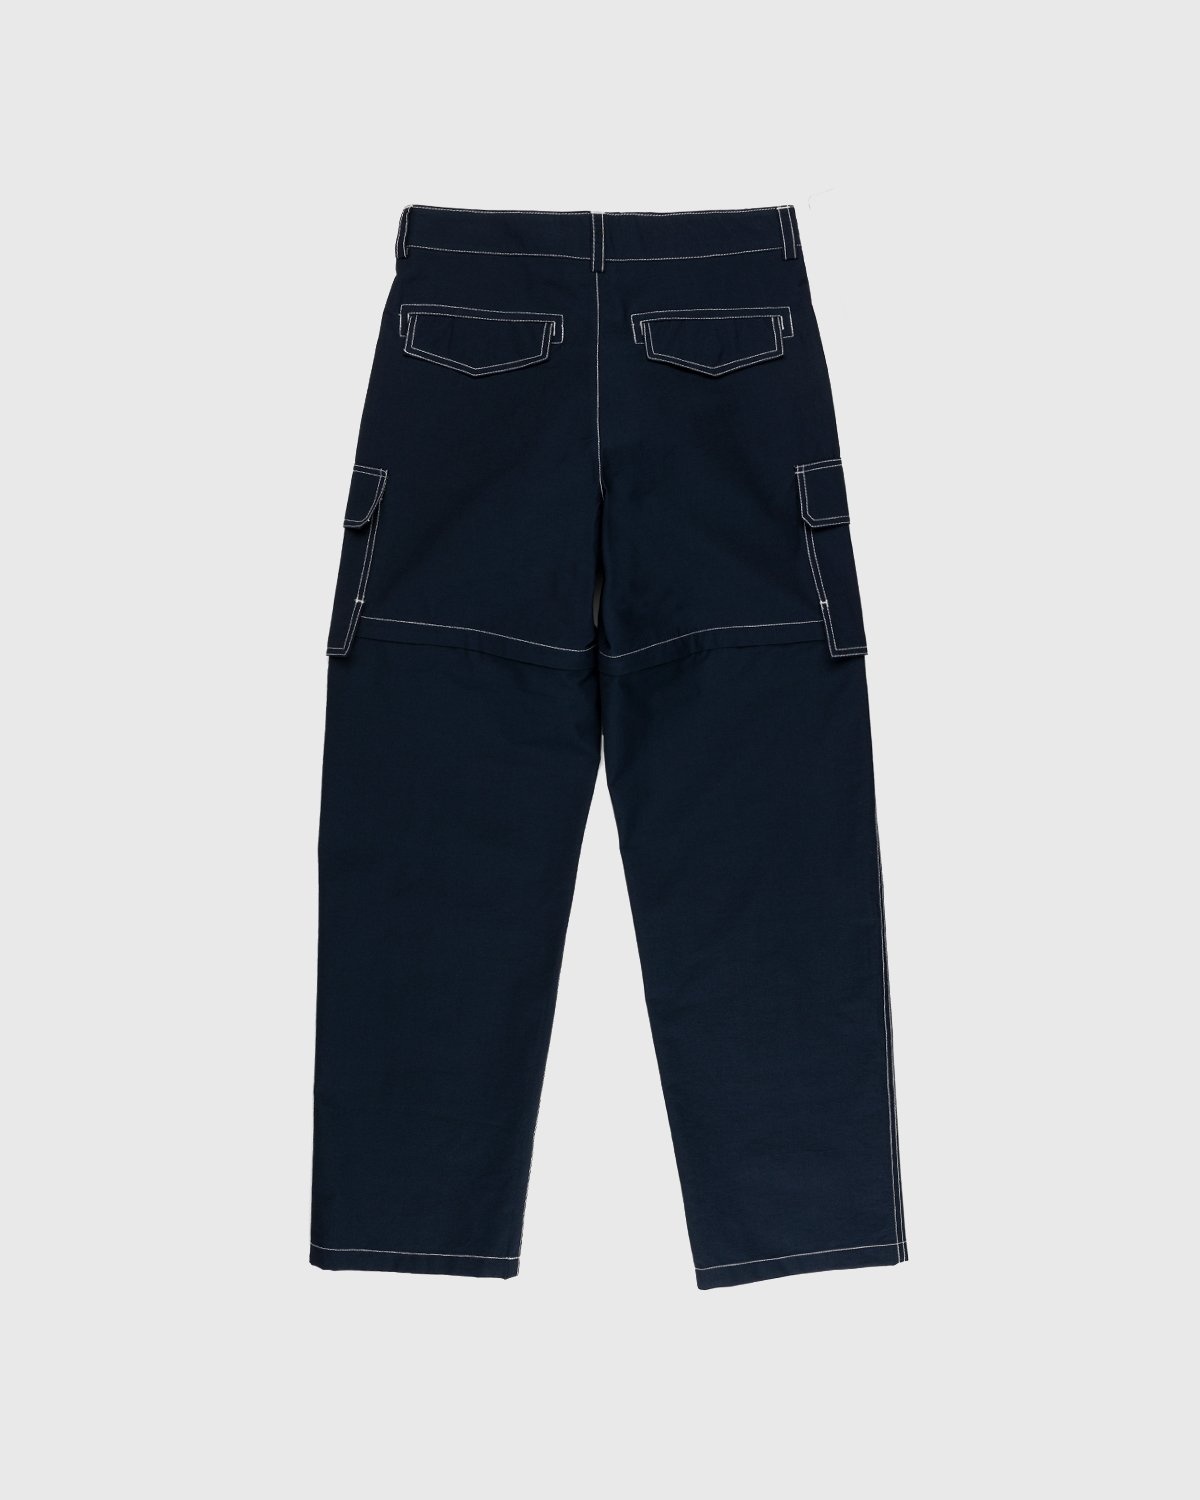 JACQUEMUS – Le Pantalon Peche Navy - Cargo Pants - Blue - Image 2